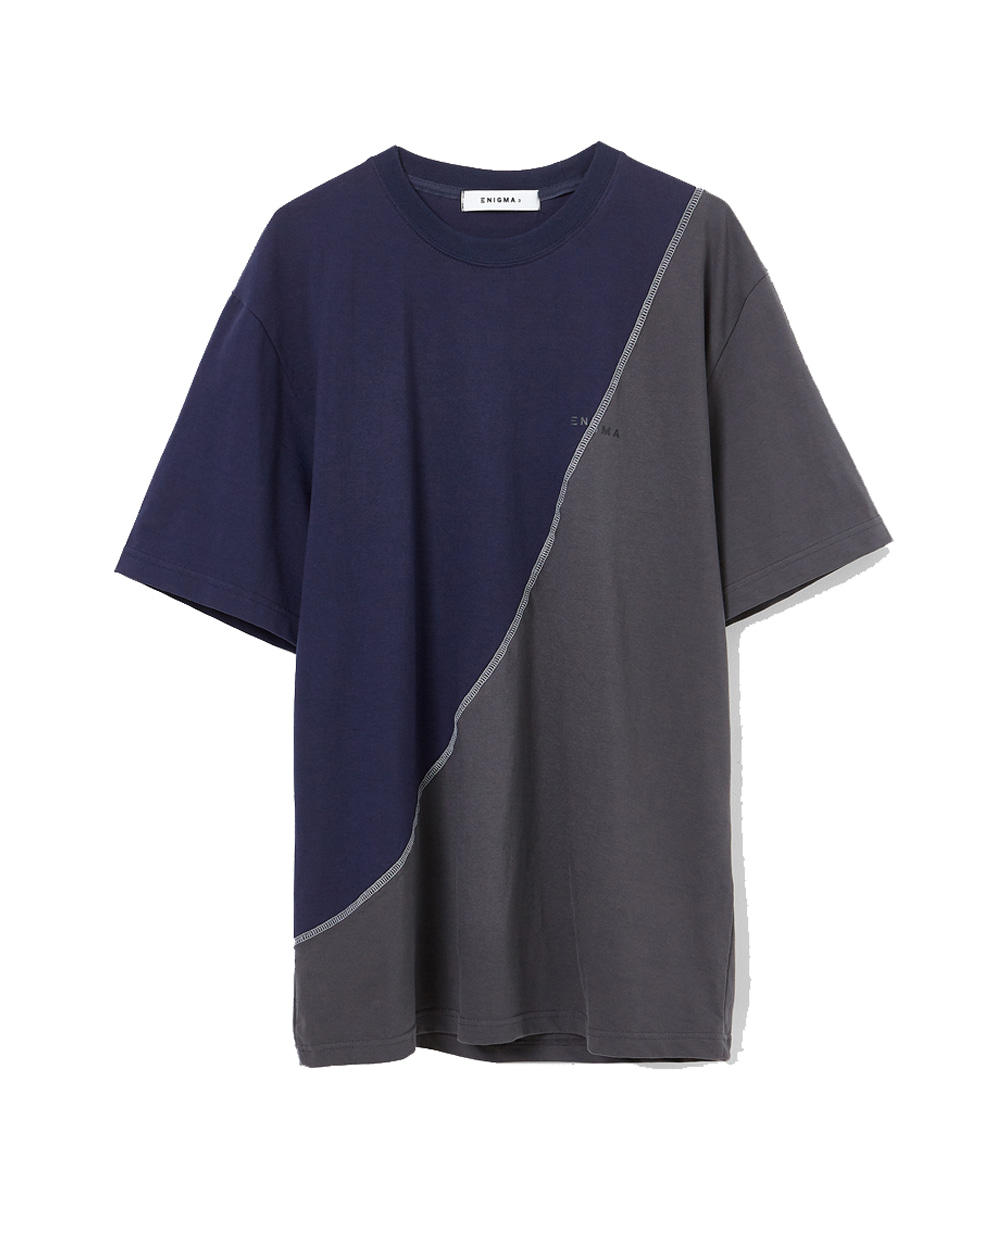 이니그마 Rework T-Shirt (Navy/Charcoal)